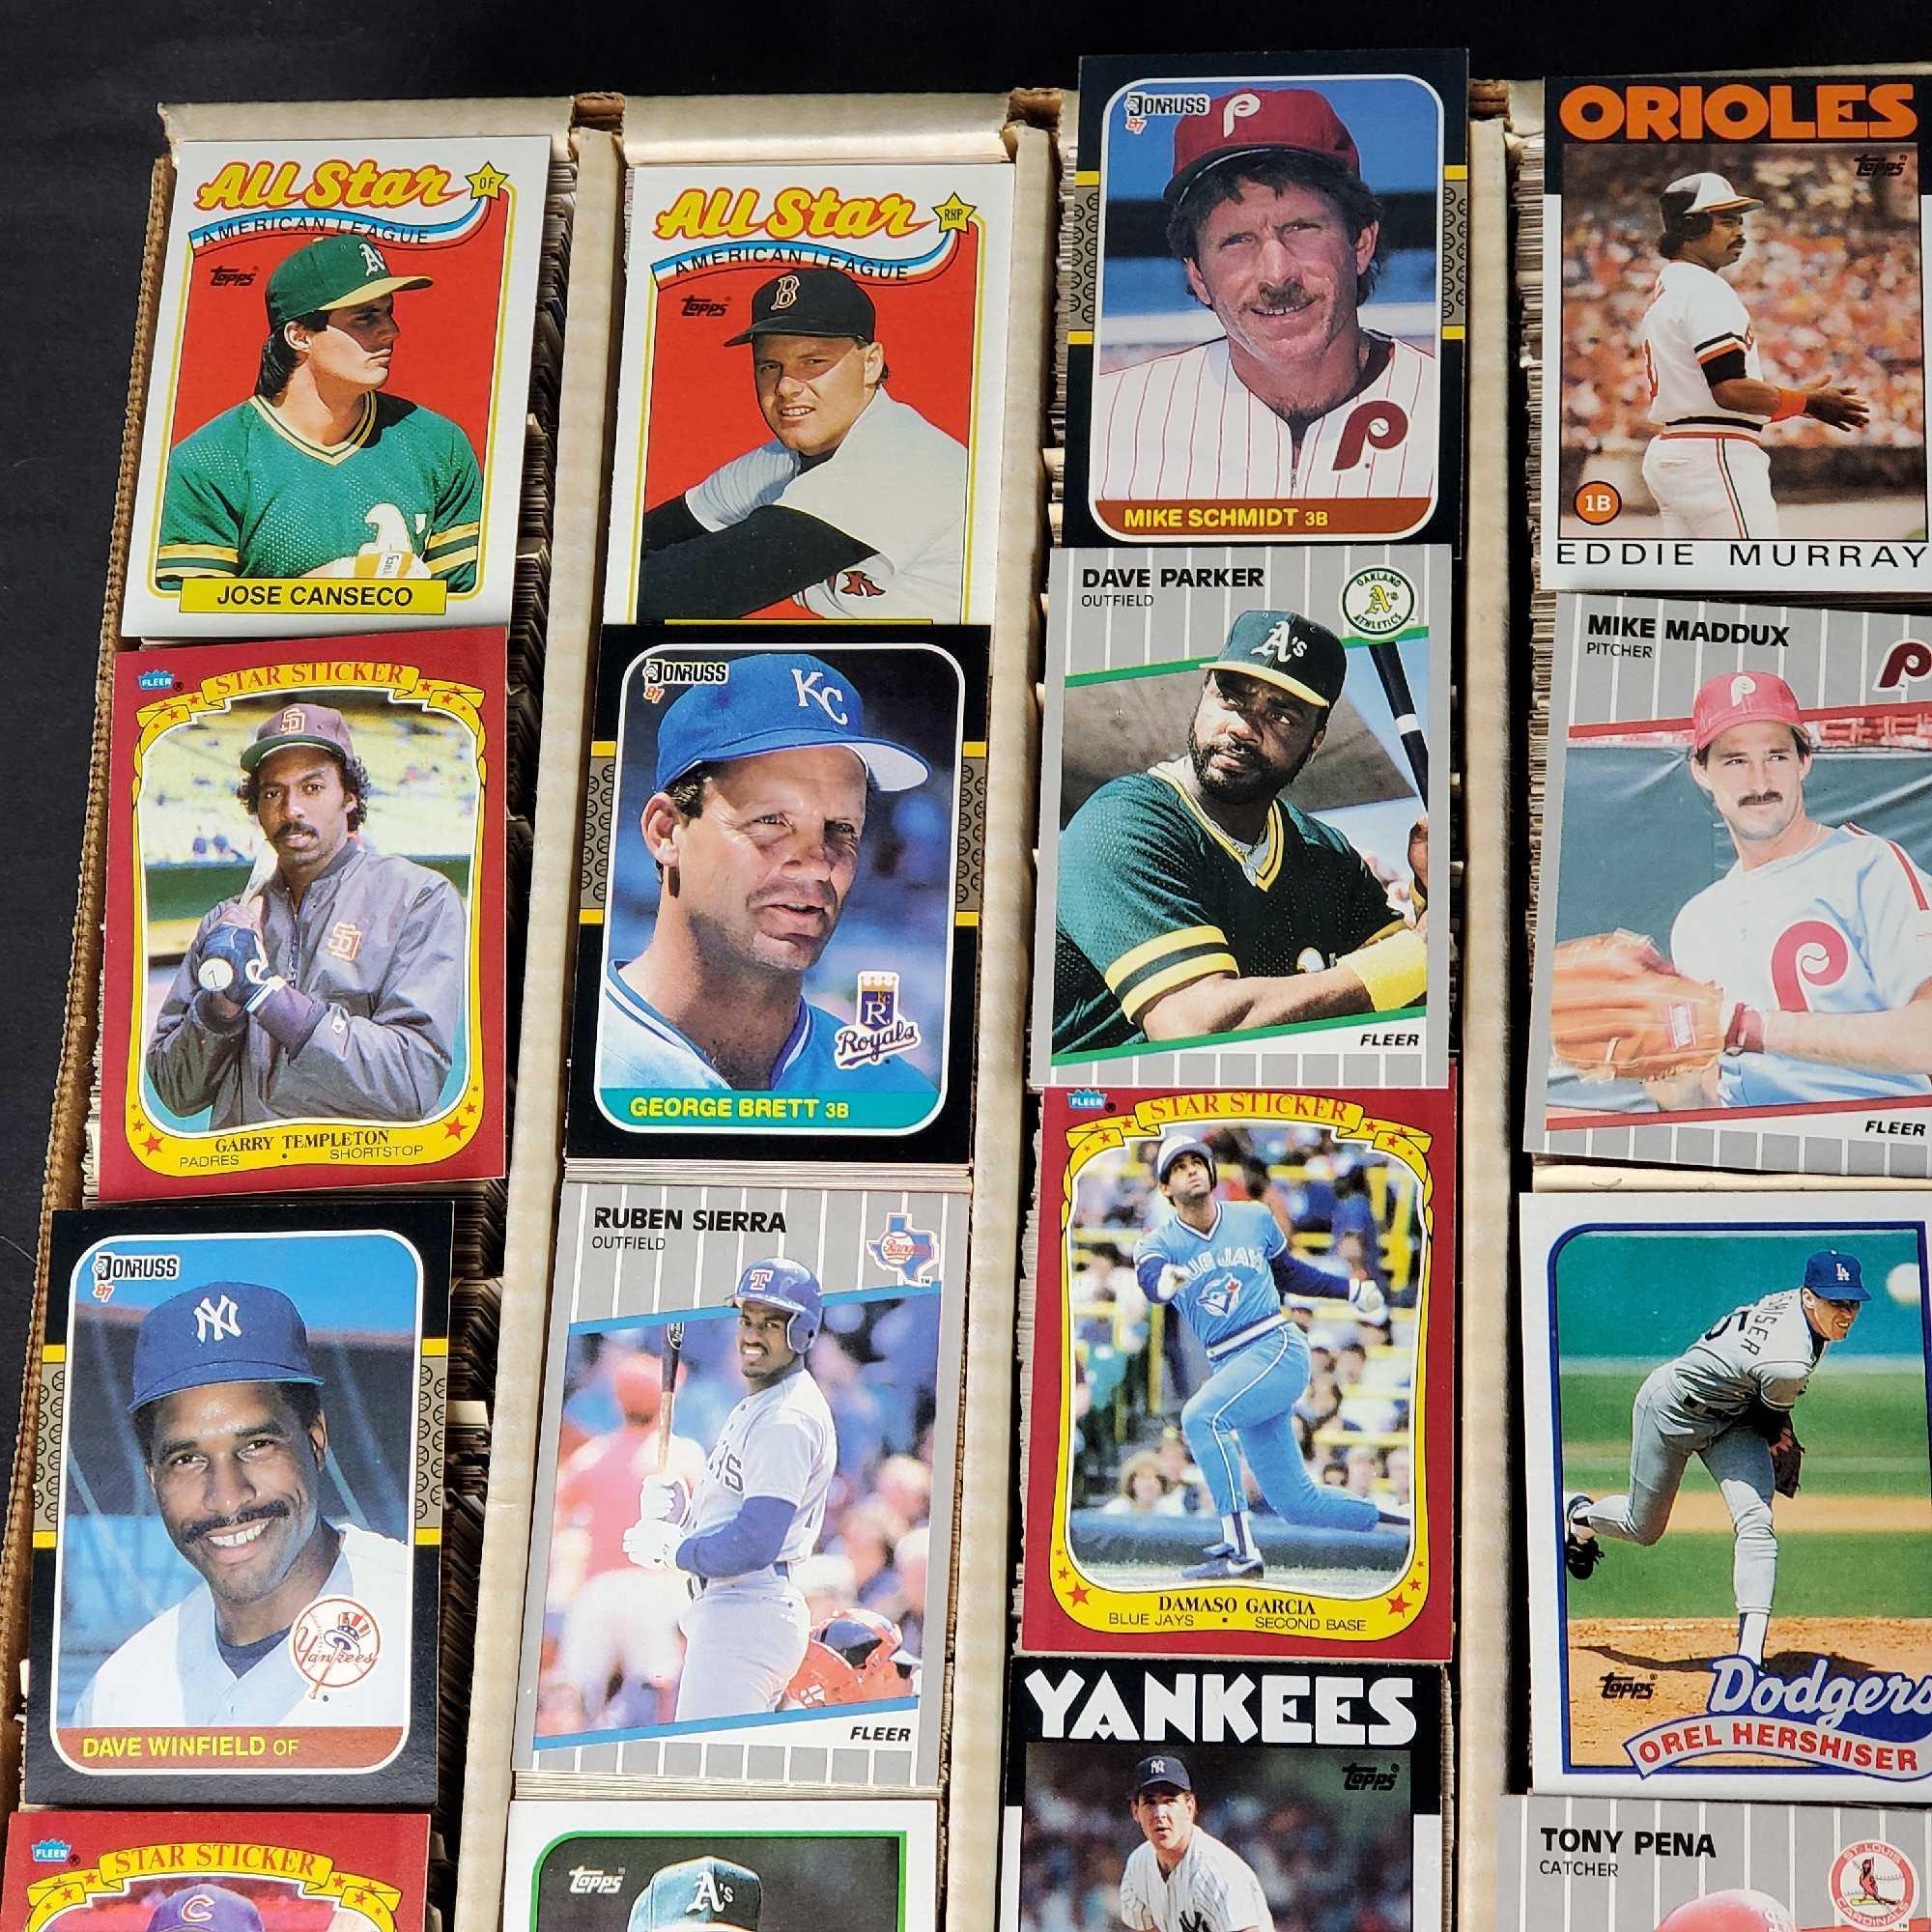 2000 count box 1980s baseball cards Topps Fleer Donruss